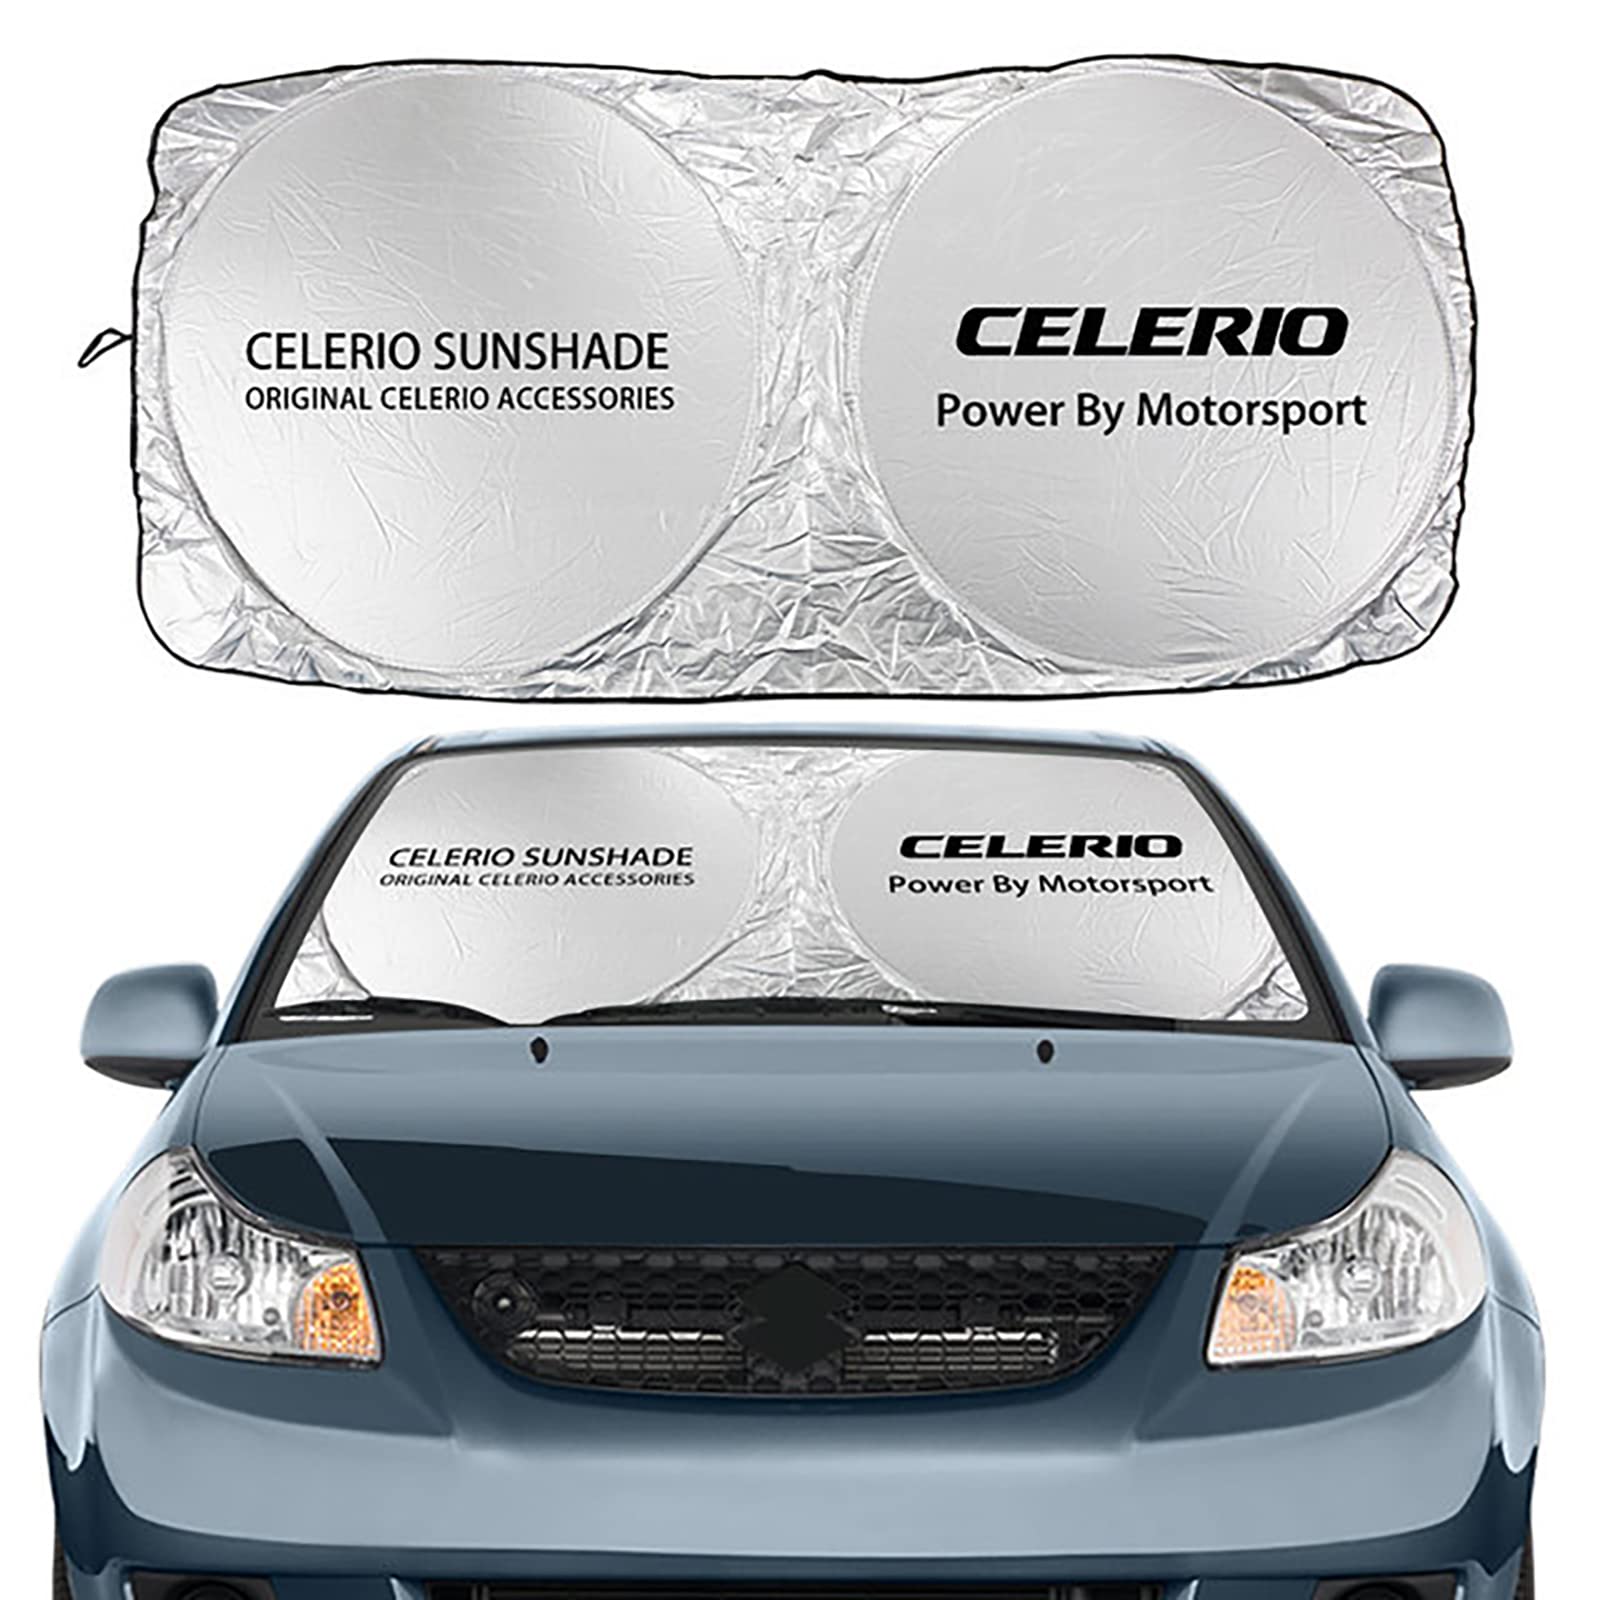 GENTRE Sonnenschutz Auto Frontscheibe für Suzuki Celerio,Faltbarer Sonnenschutz Windschutzscheibe UV Schutz und Wärme Sonnenschirm,S von GENTRE